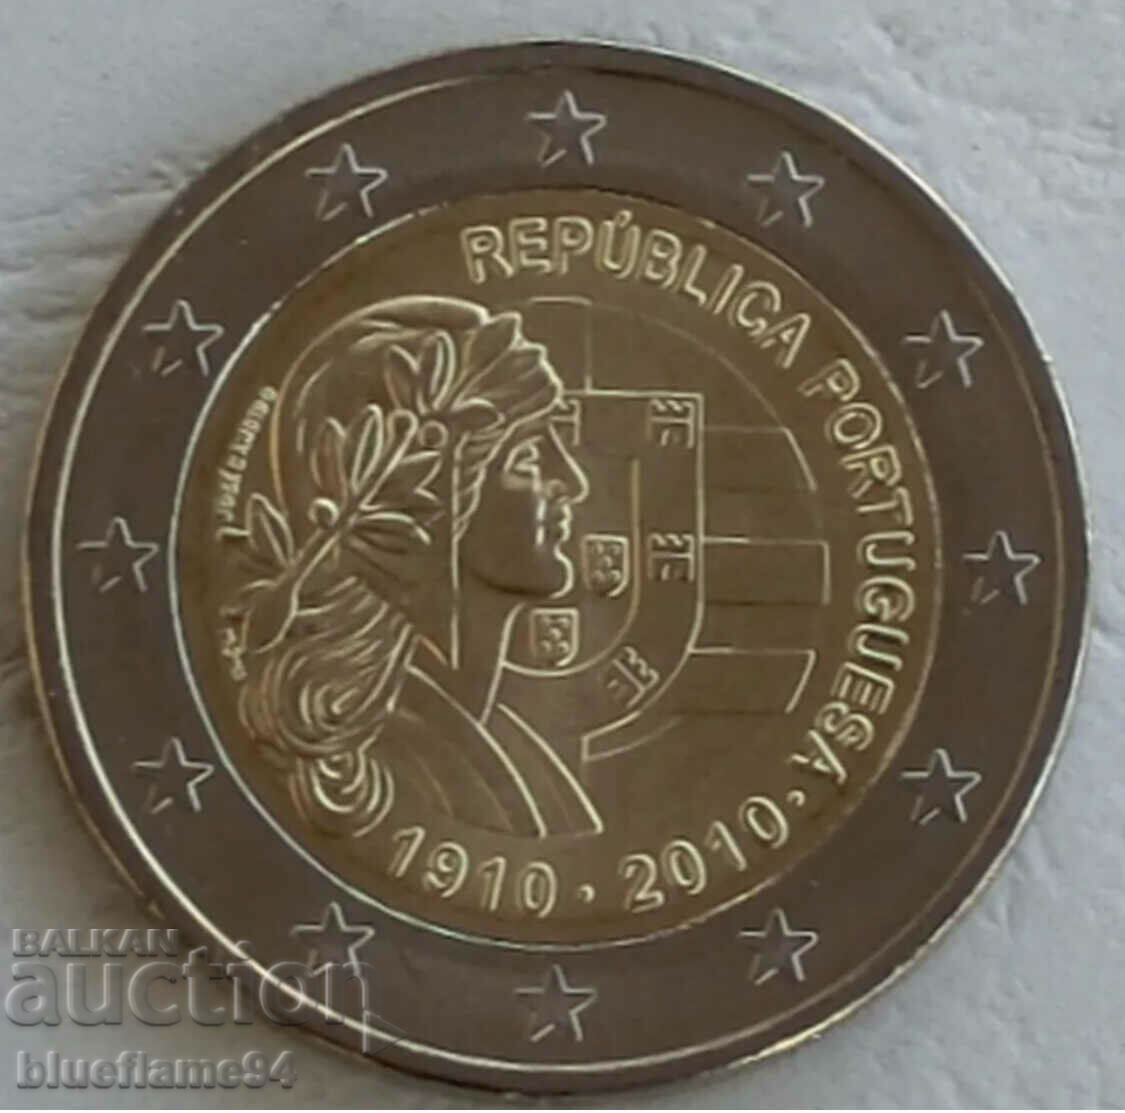 2 euro Portugalia 2010